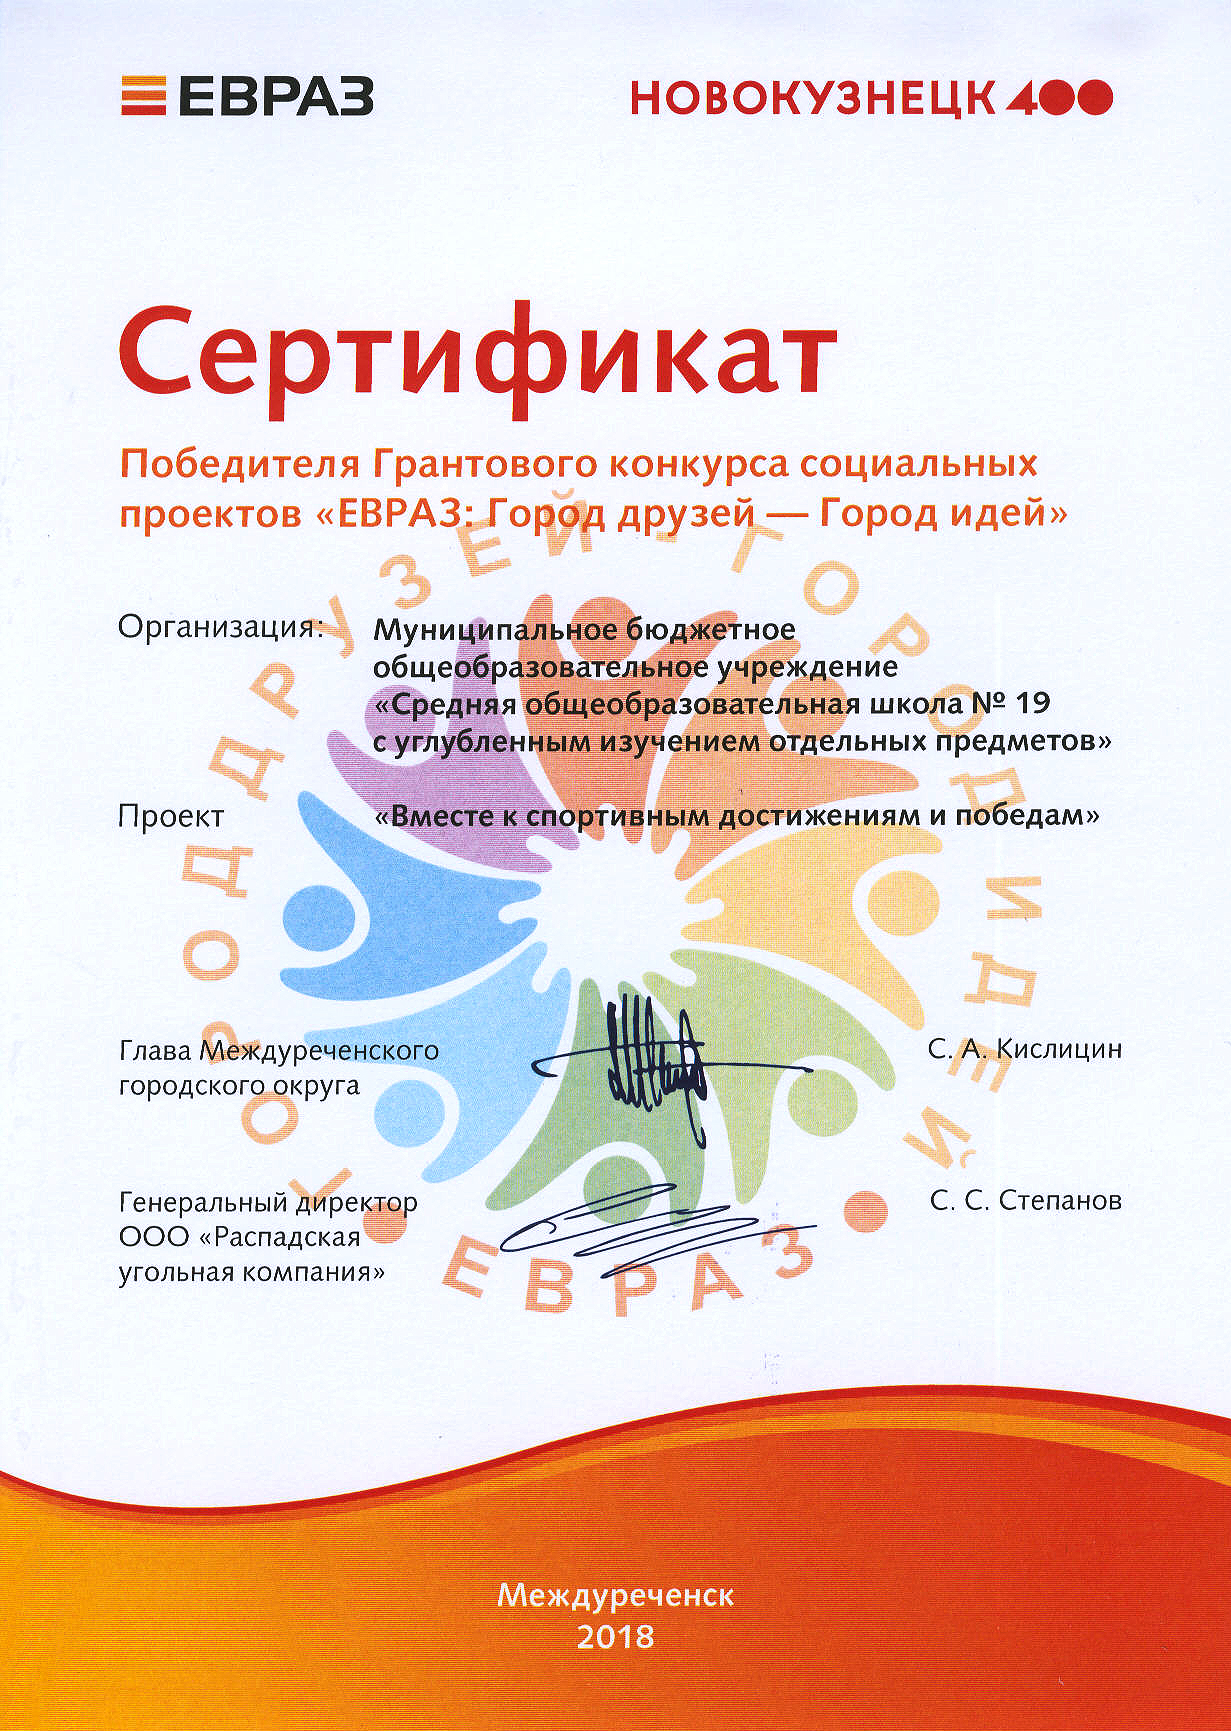 Сертификат ЕВРАЗ 2